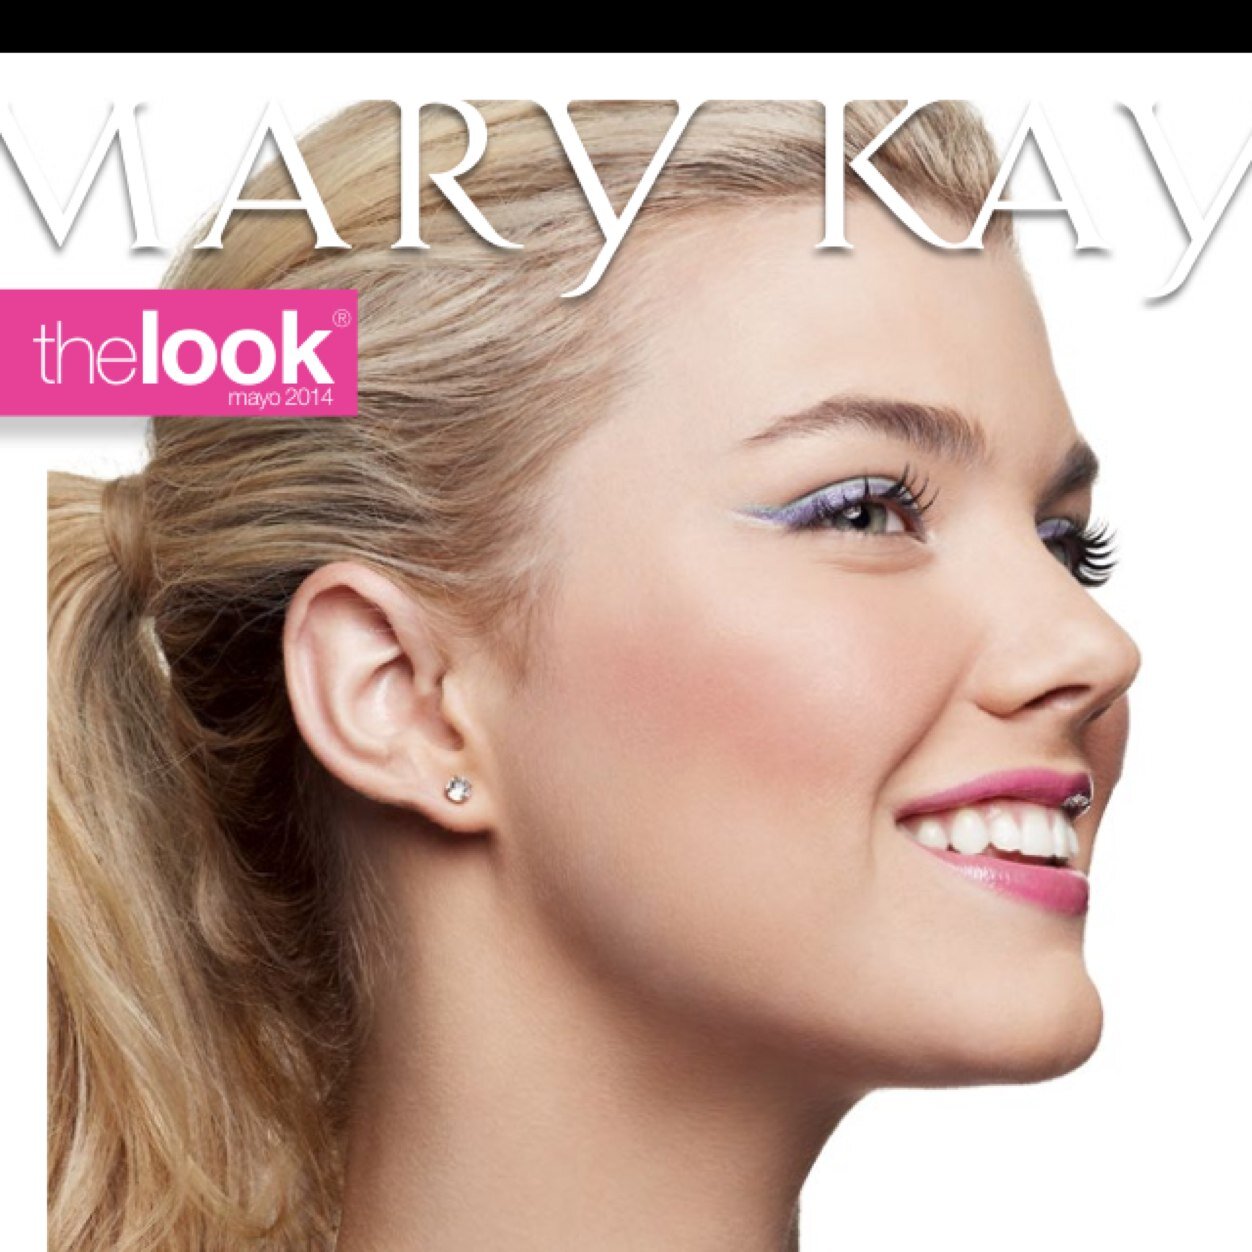 Inicia HOY el mejor NEGOCIO en Mary Kay Cosmetics. No busques trabajo. INICIA TU NEGOCIO CON INGRESOS ILIMITADOS, AHORA.